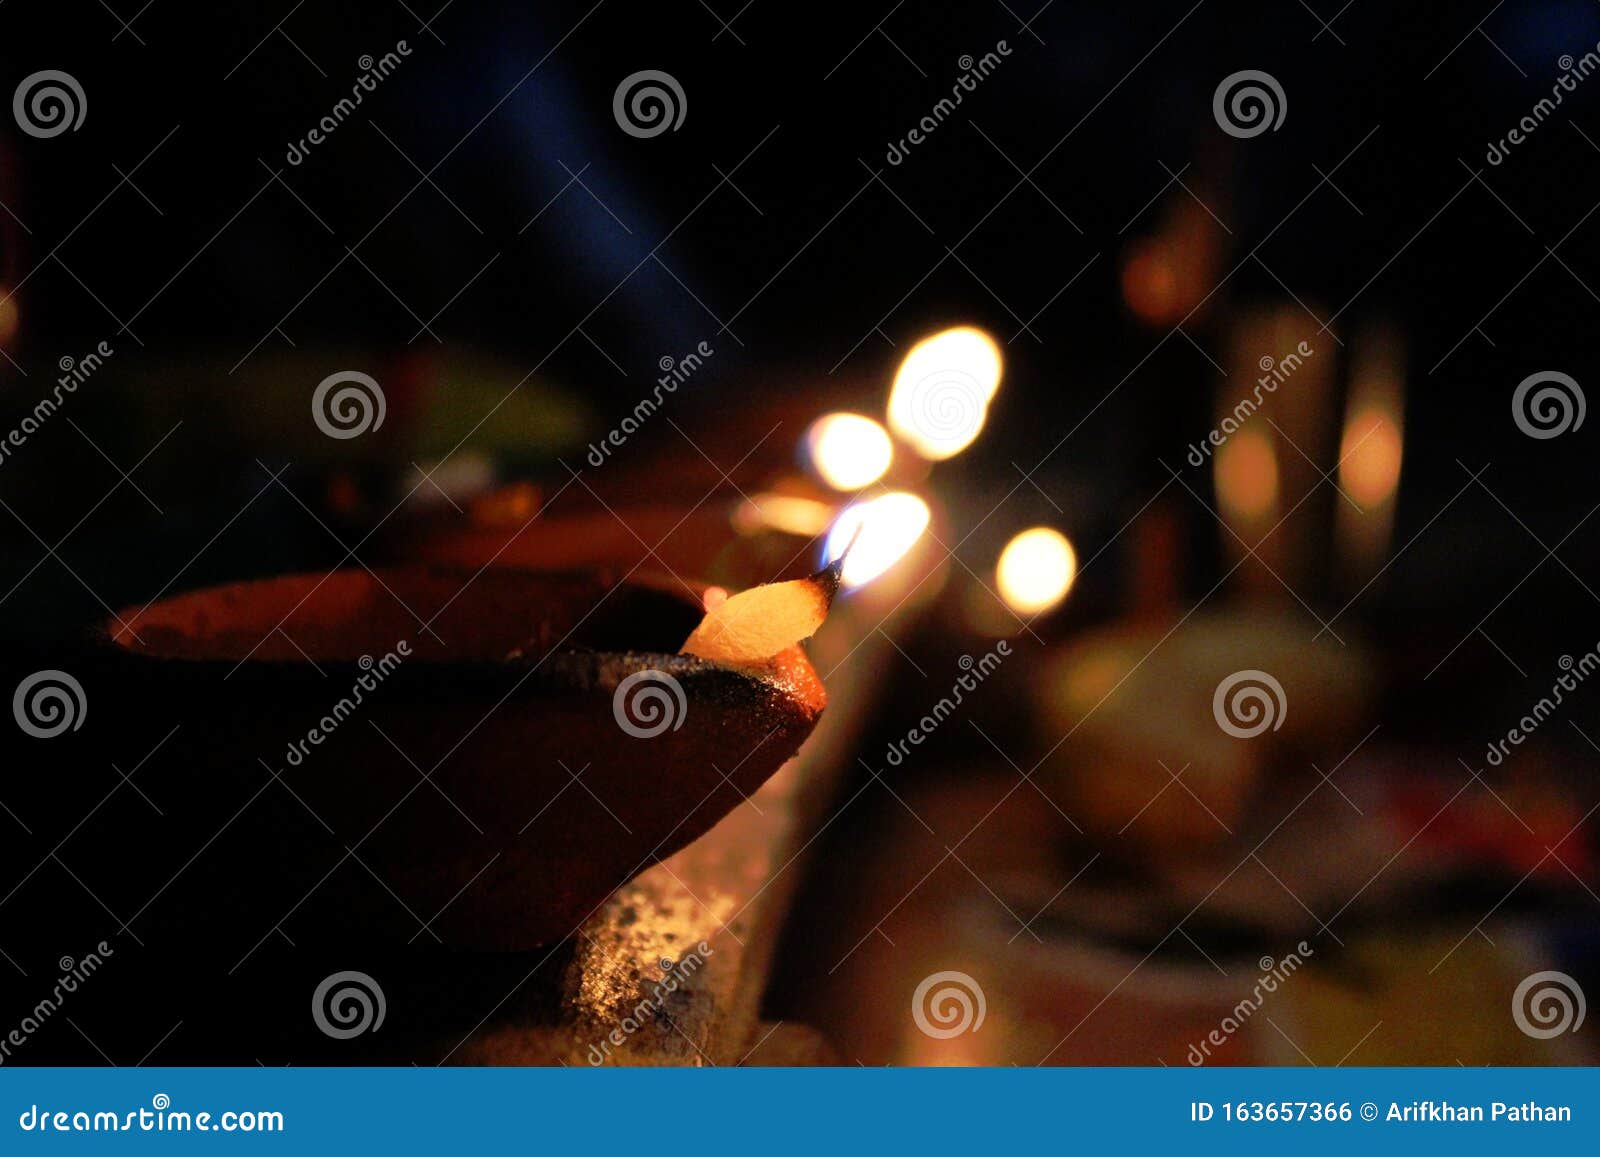 Diya Bei Diwali Festival Mit Dunklem Hintergrund Stockfoto - Bild von beleuchtung, festival ...